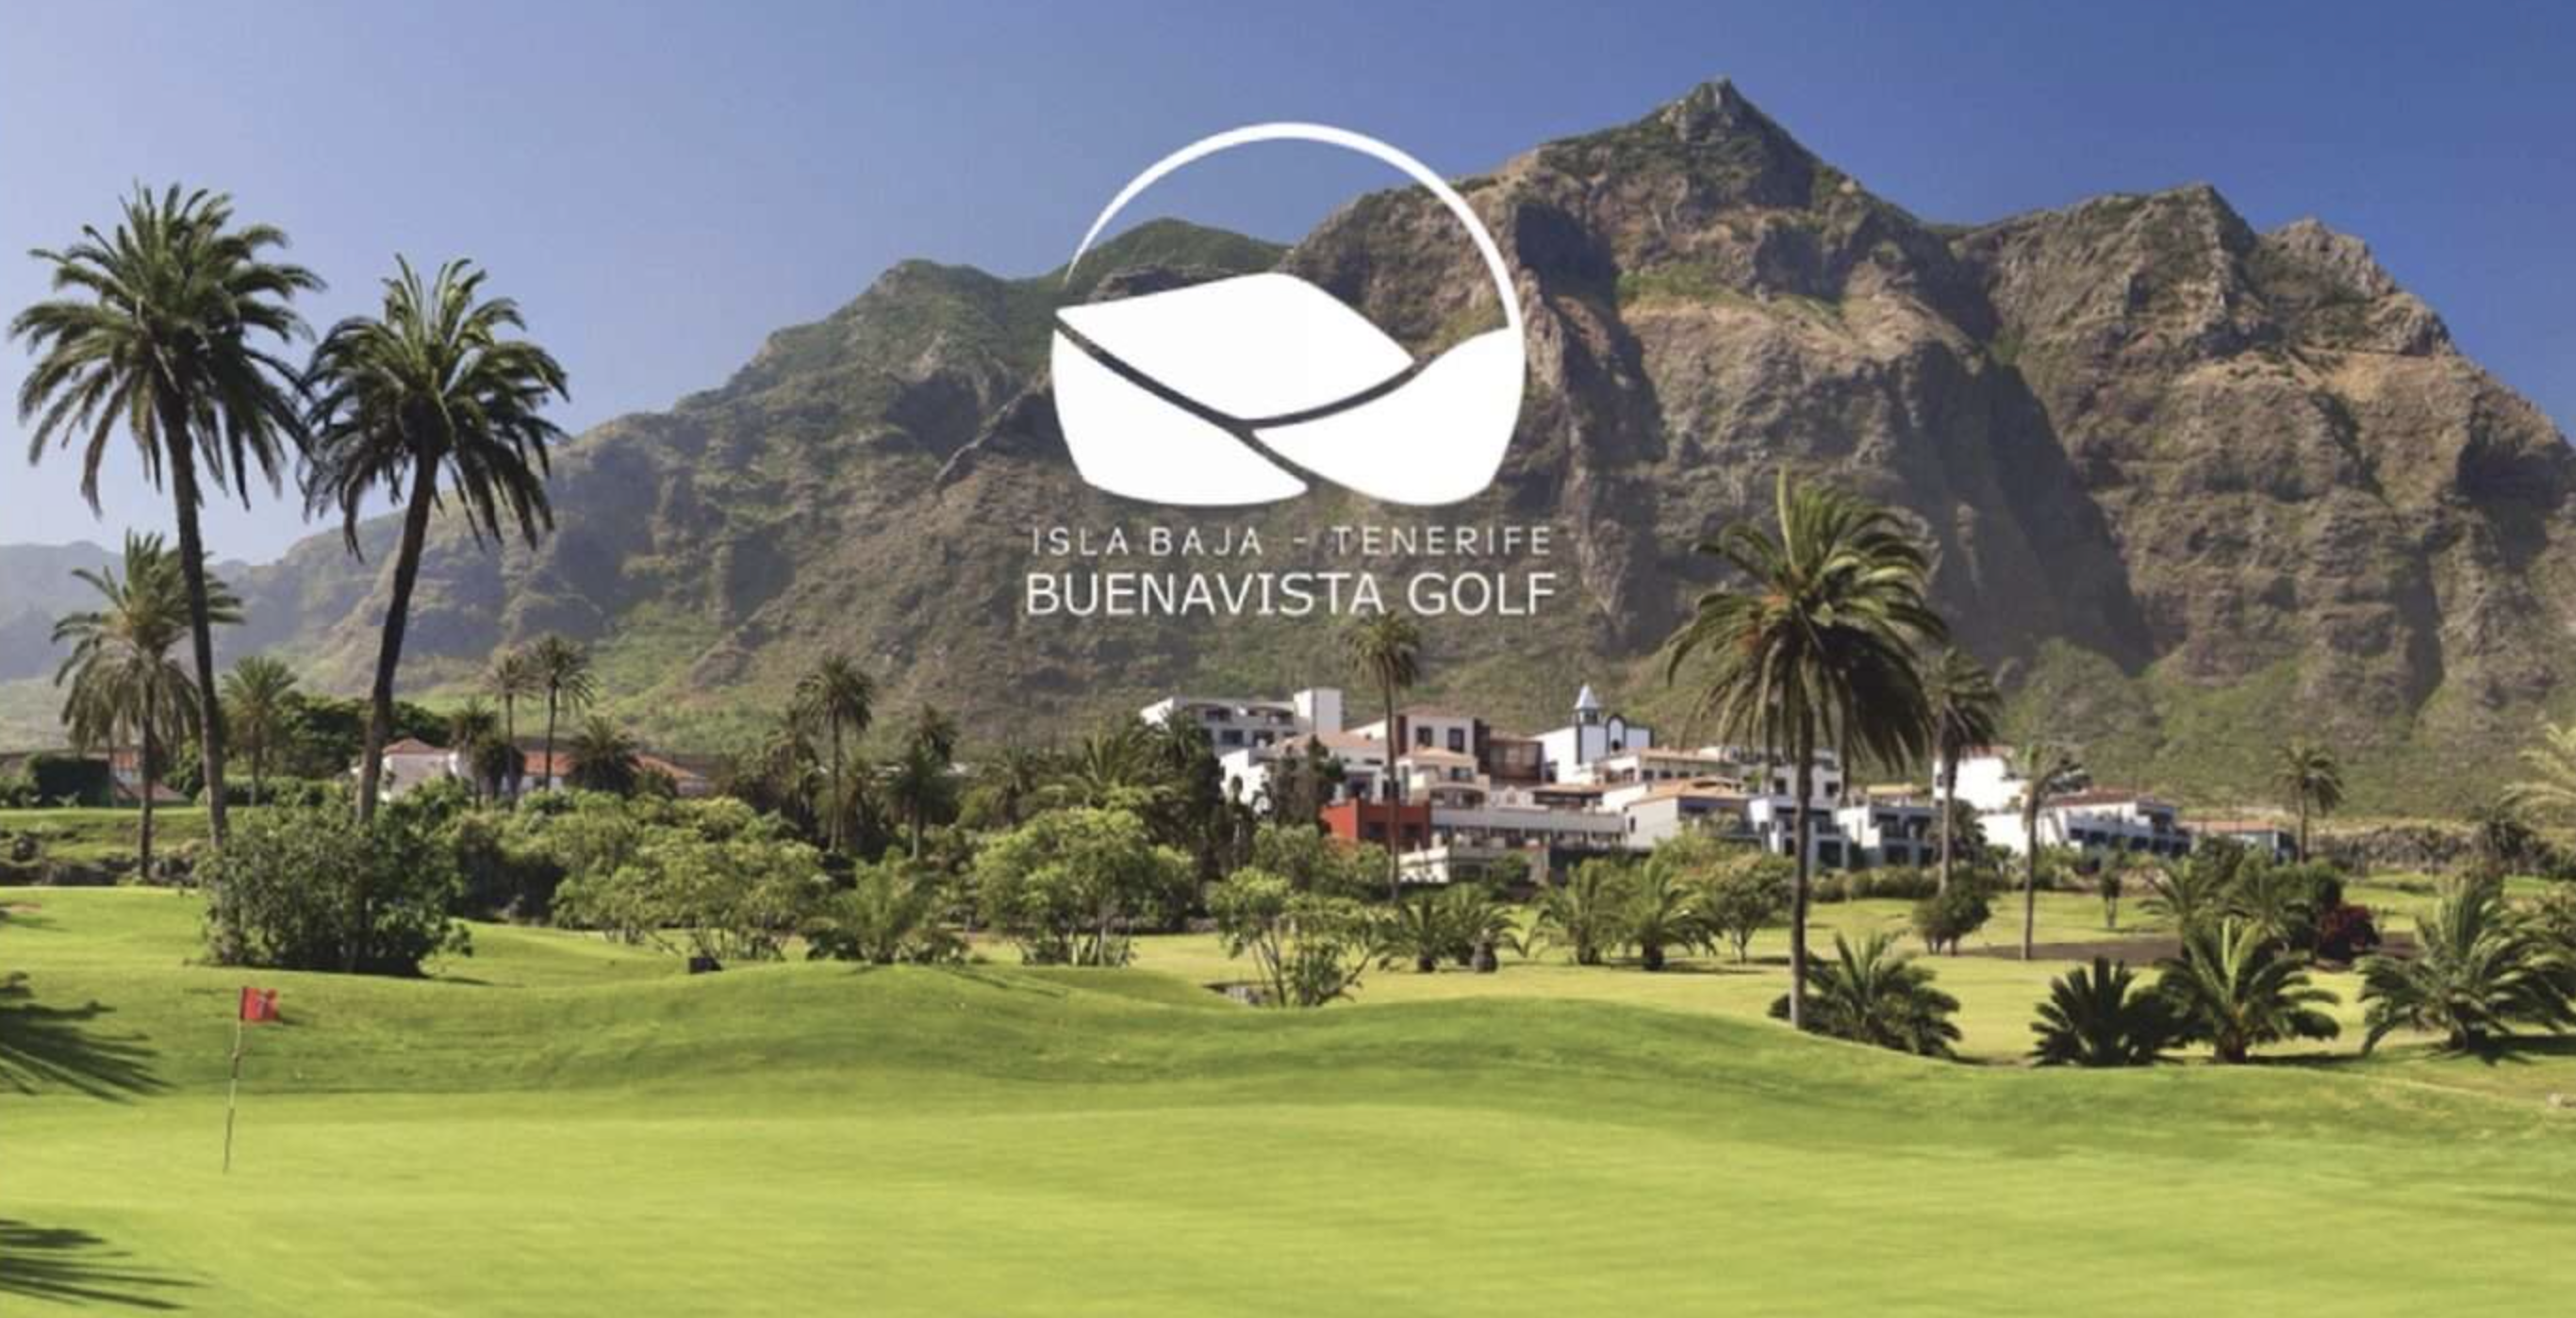 El domingo 13 de febrero cita con el golf solidario en Buenavista Golf en el Torneo Benéfico por La Palma.